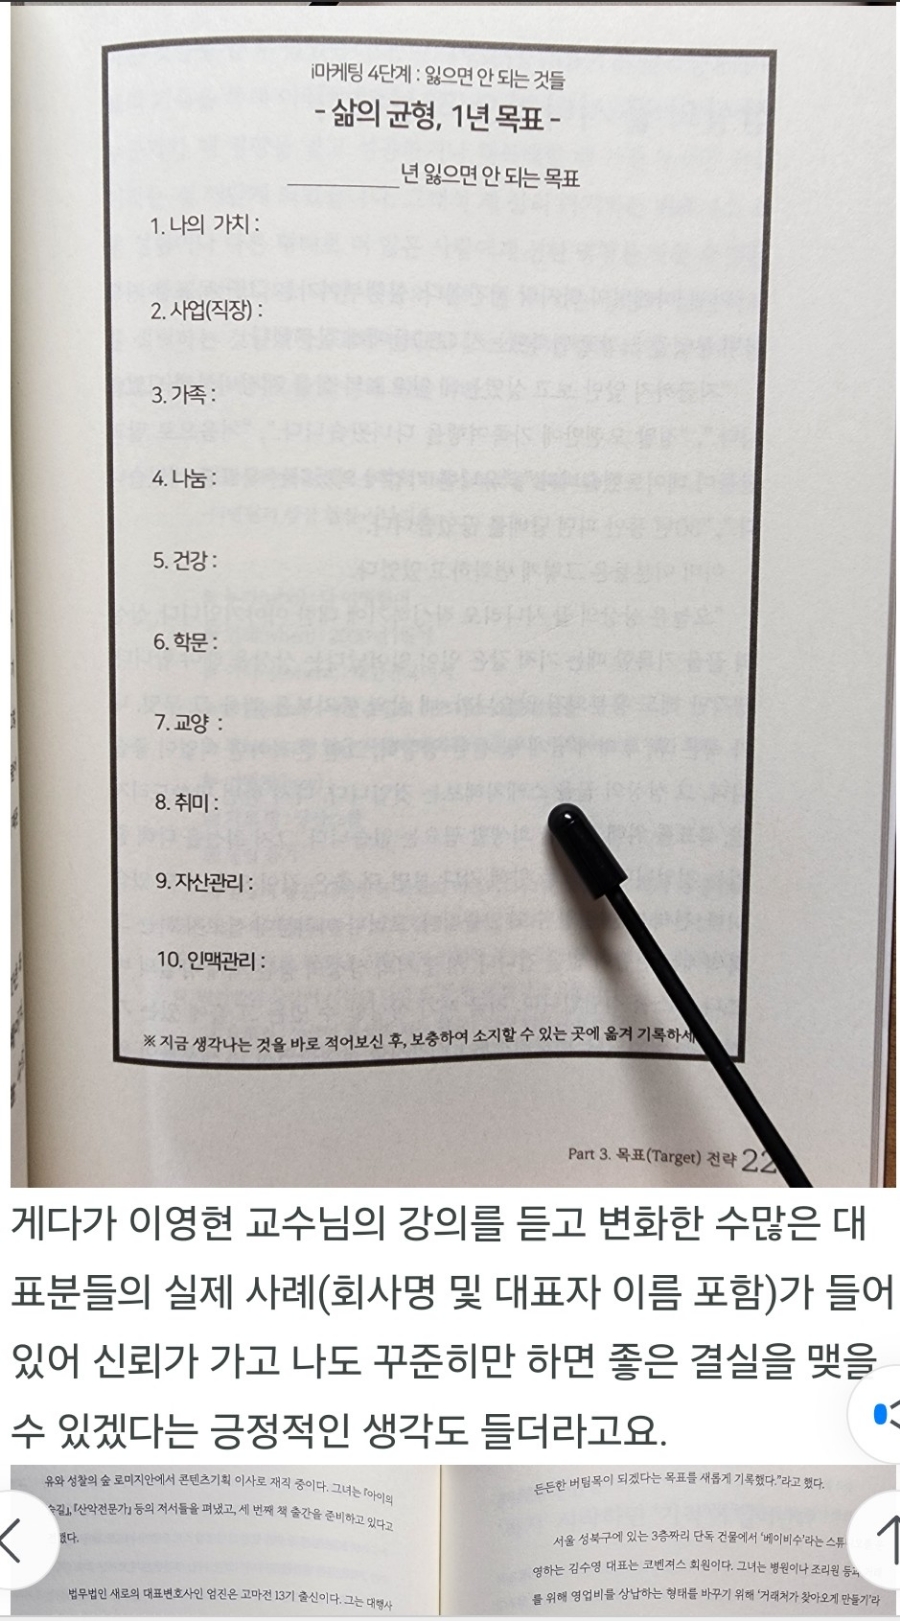 리뷰로 보는 마케팅 관련 책 추천 도서 동두천 장미미용실